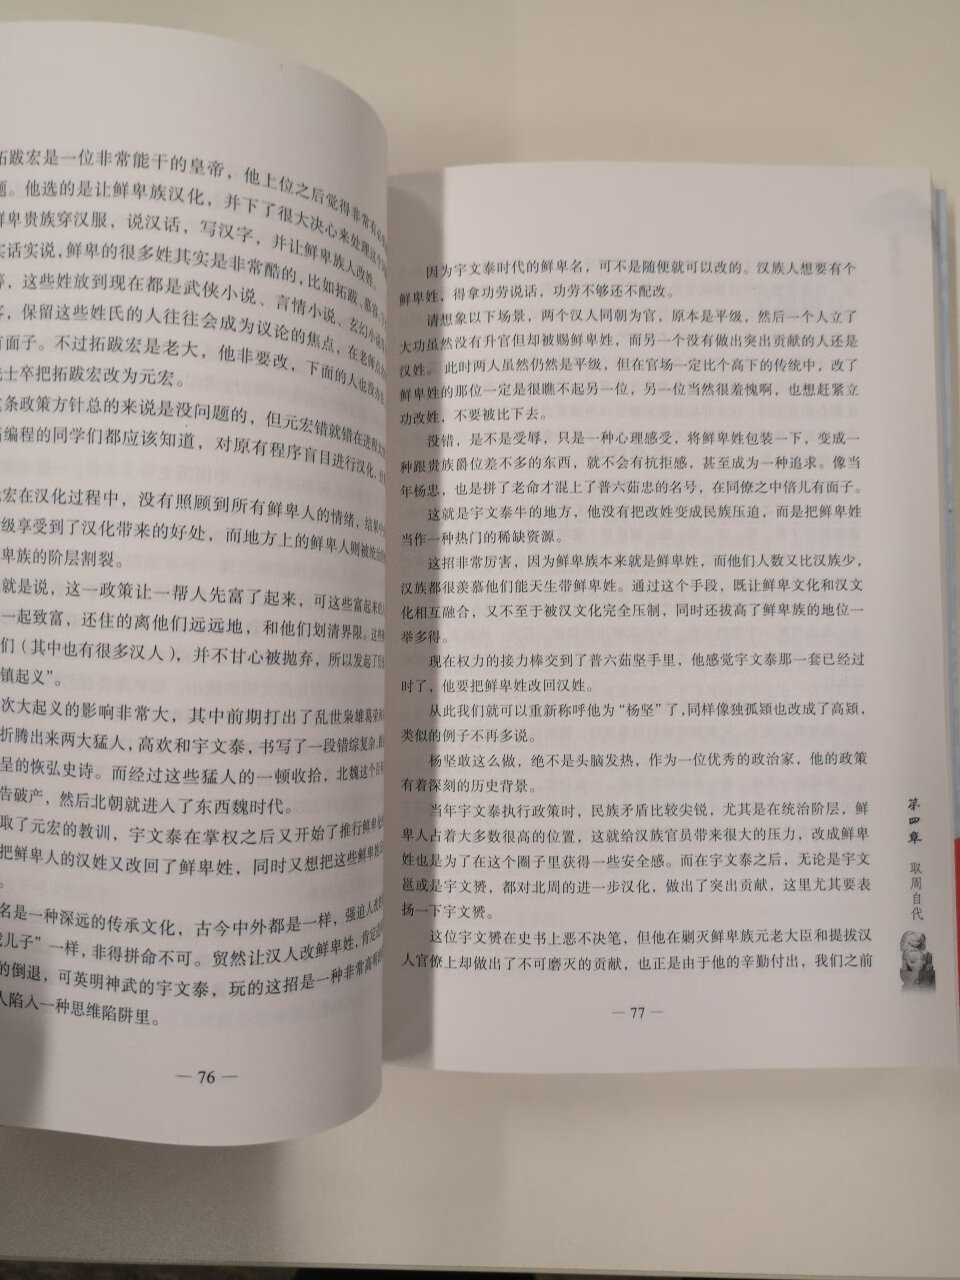 字体大小合适，塑膜完整。小时候就喜欢听隋唐演义，长大了看书，这本书虽然是通俗读物，但人气旺，值得一读。